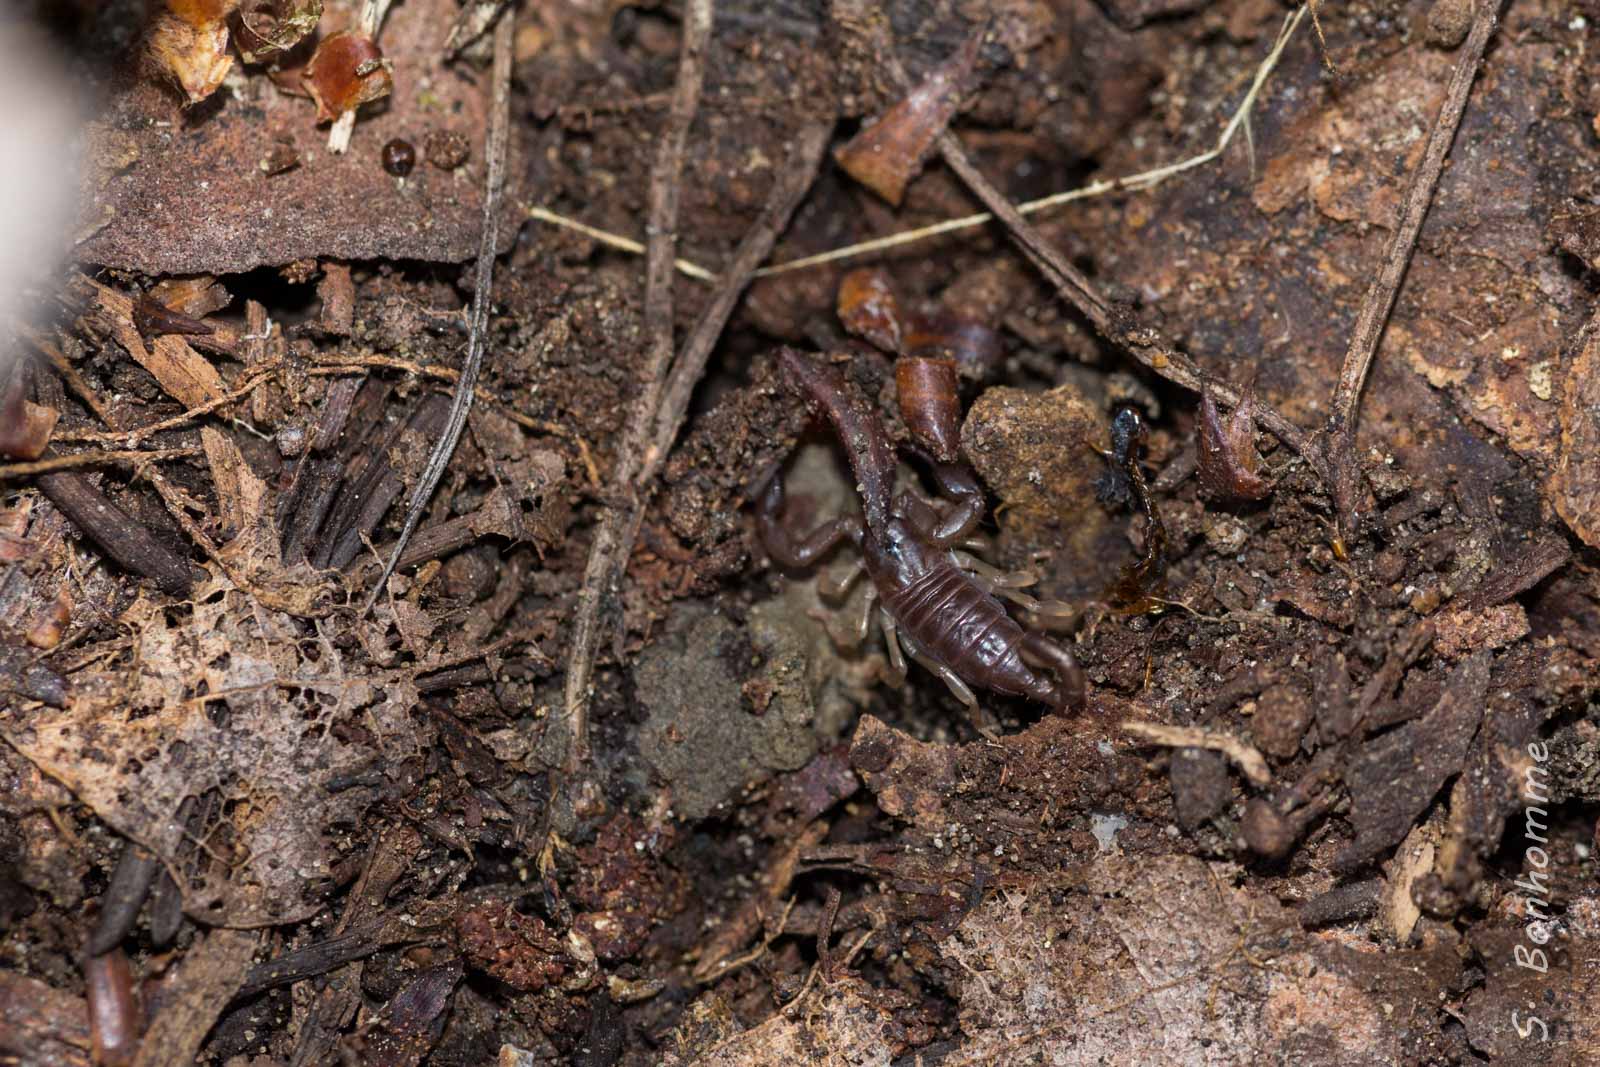 Scorpion / Euscorpius sp. flavicaudis